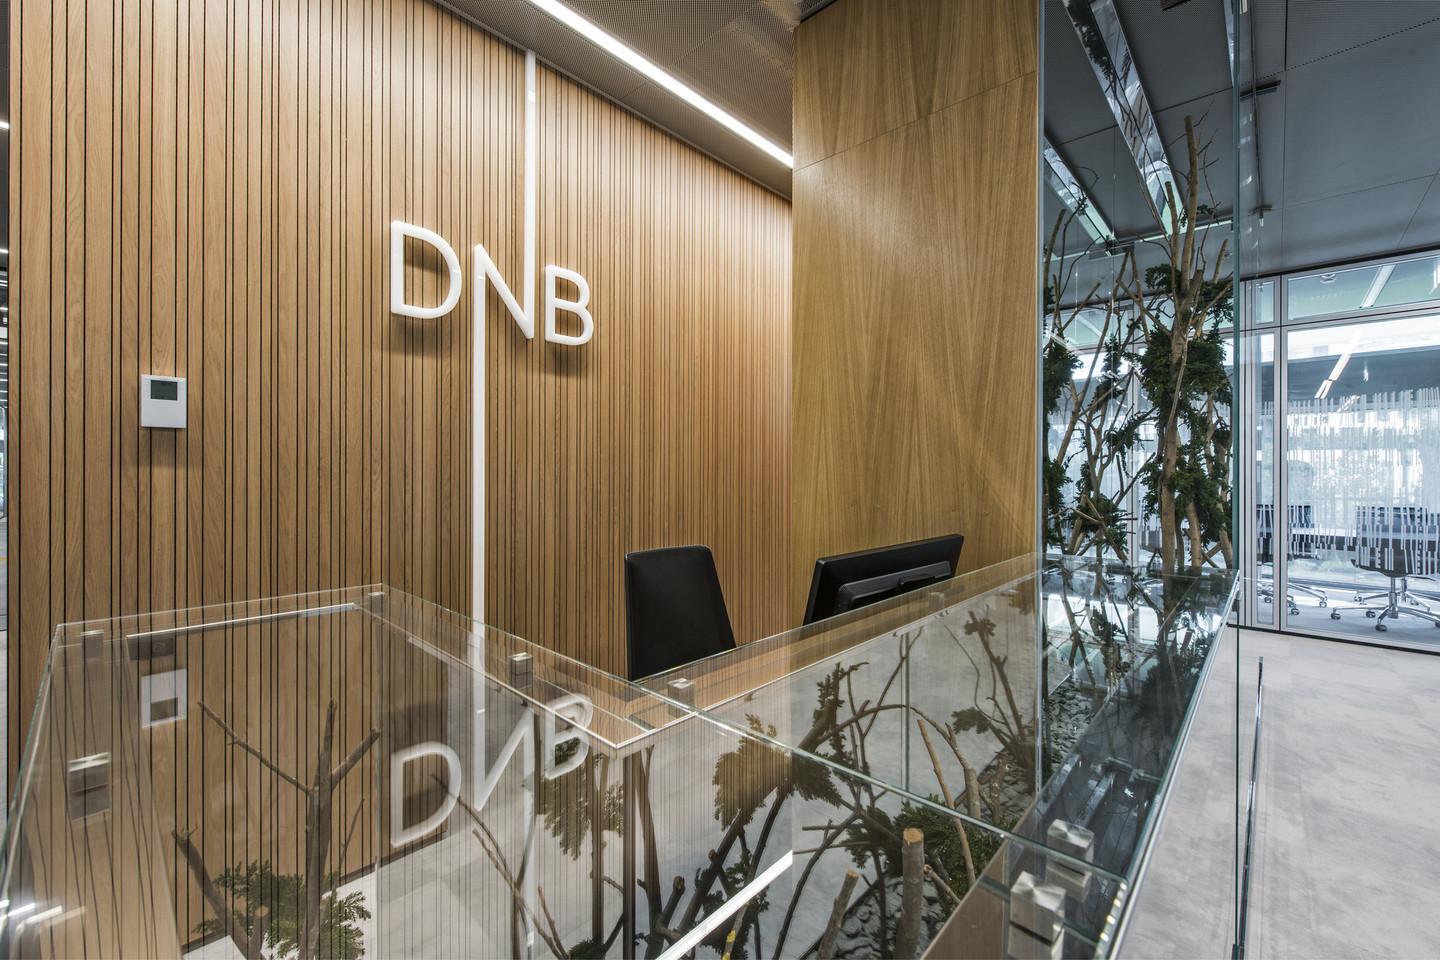 Didžiausiame komplekso pastate įsikūrė DNB bankas – jo administracija ir klientų aptarnavimo skyrius.<br>L.Garbačausko nuotr.